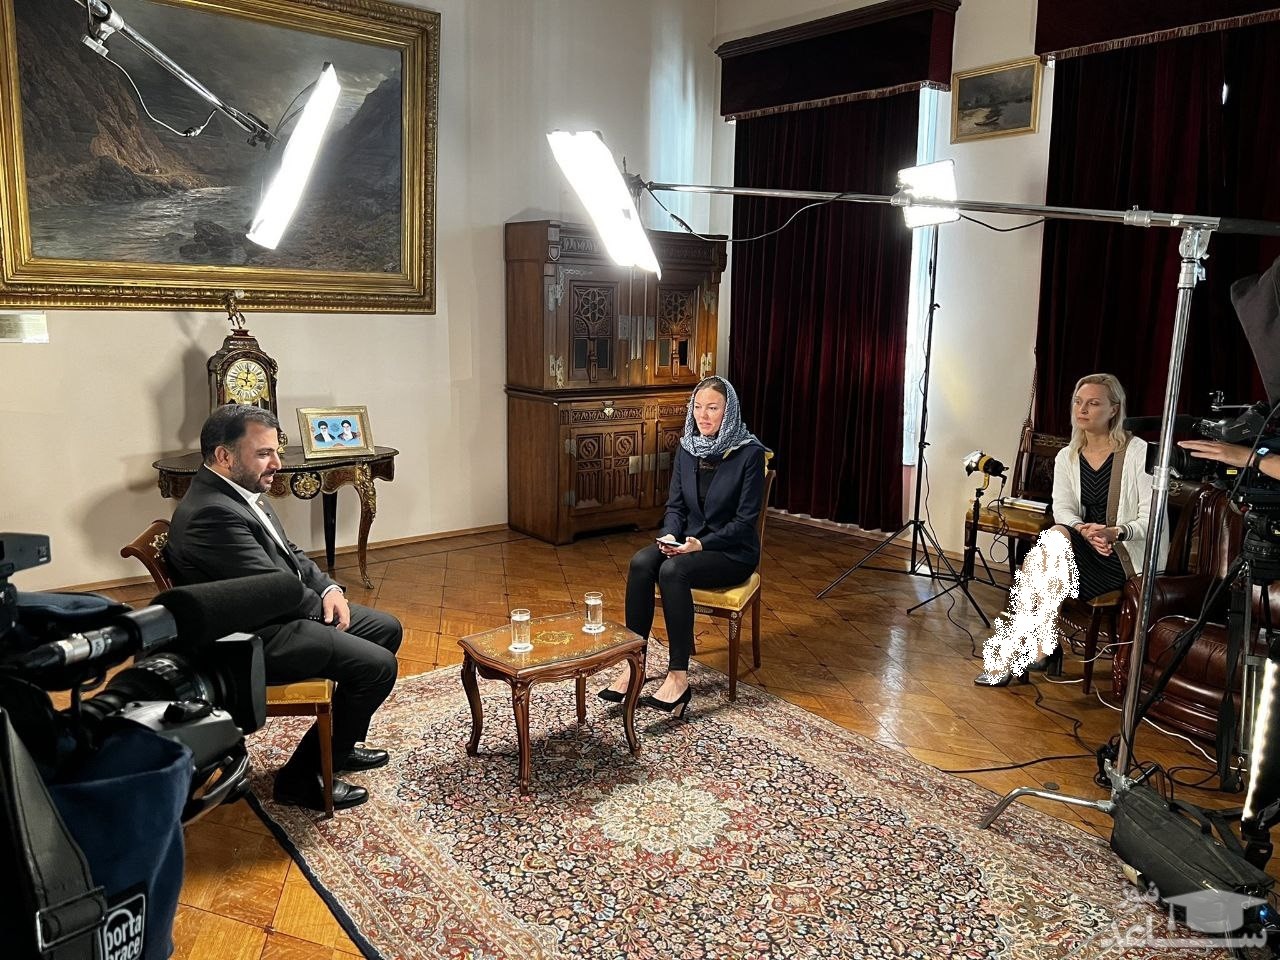 اپیزودی جالب از مصاحبه جنجالی وزیر ارتباطات با شبکه راشا تودی در سفارت ایران در روسیه